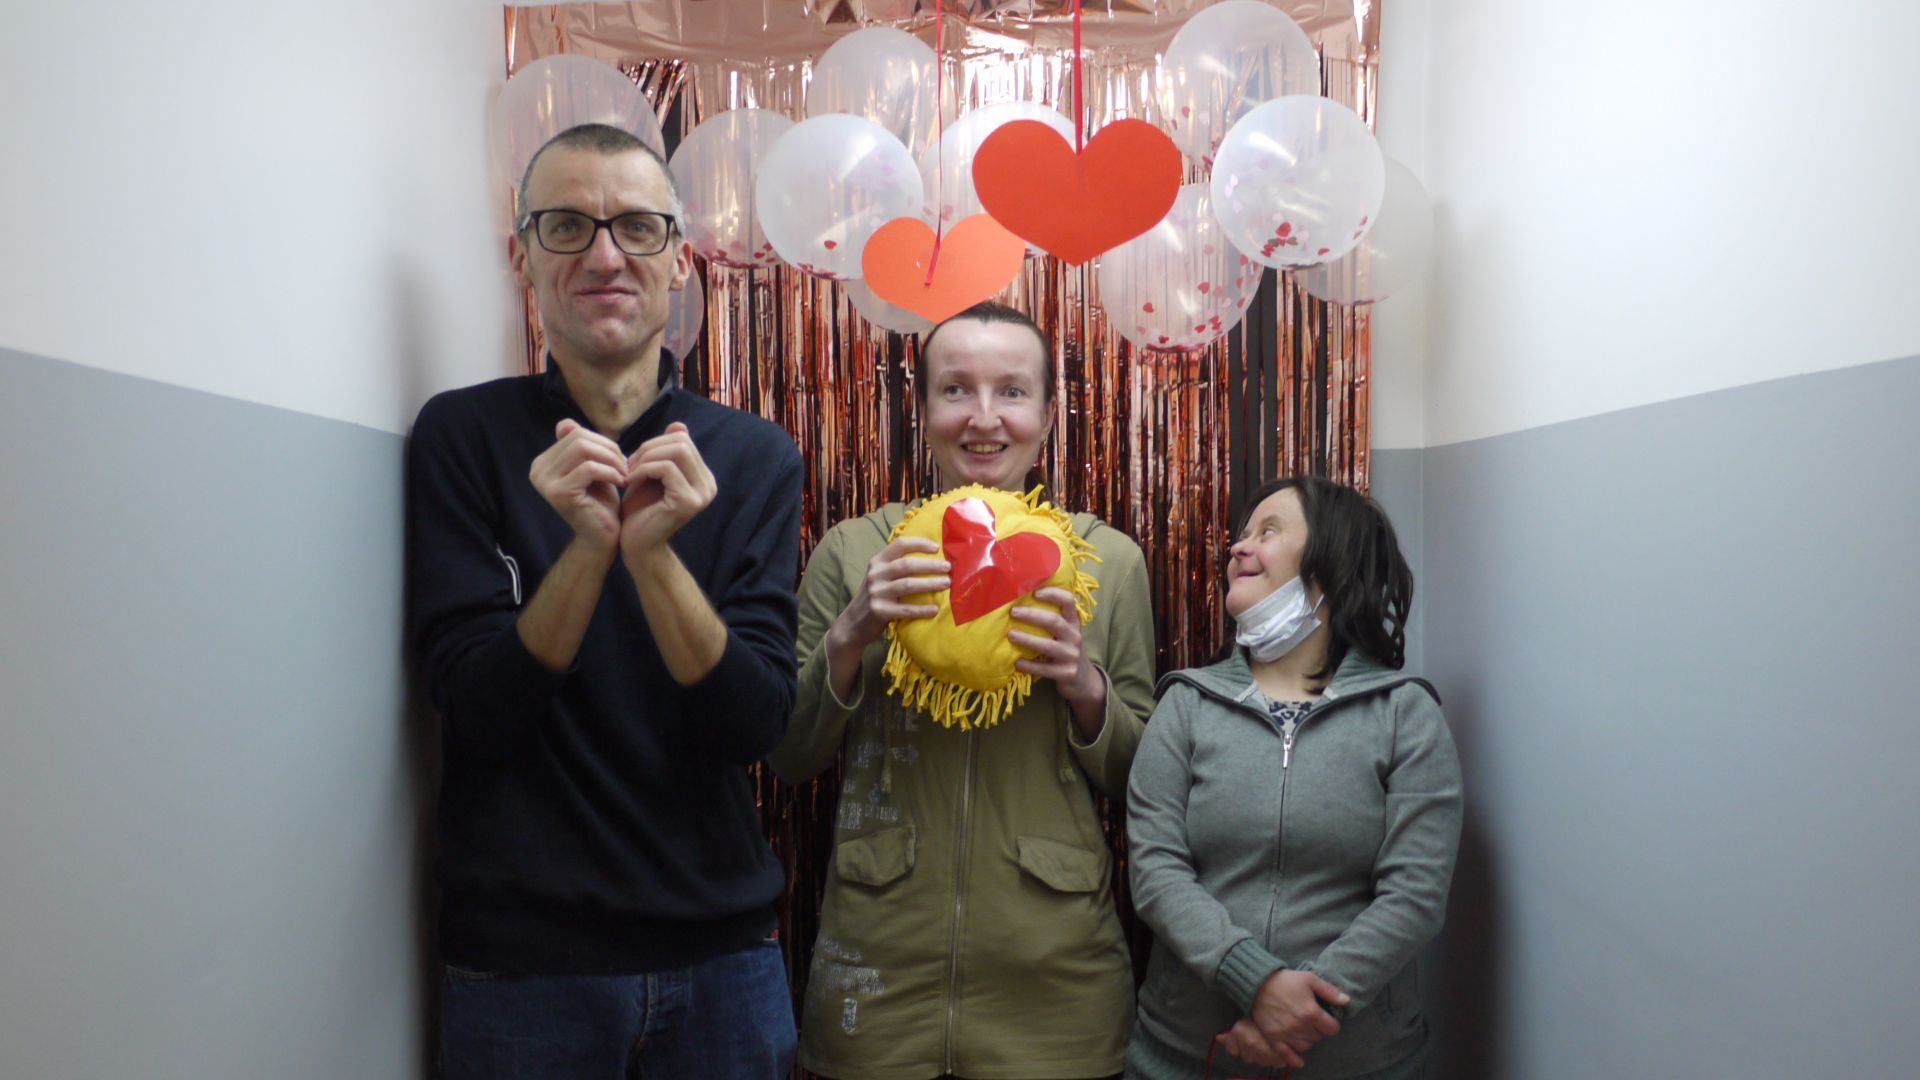 Grzegorz S., Anna Cz. i Agnieszka P. pozują na ściance udekorowanej balonami, serduszkami i serpentynami.